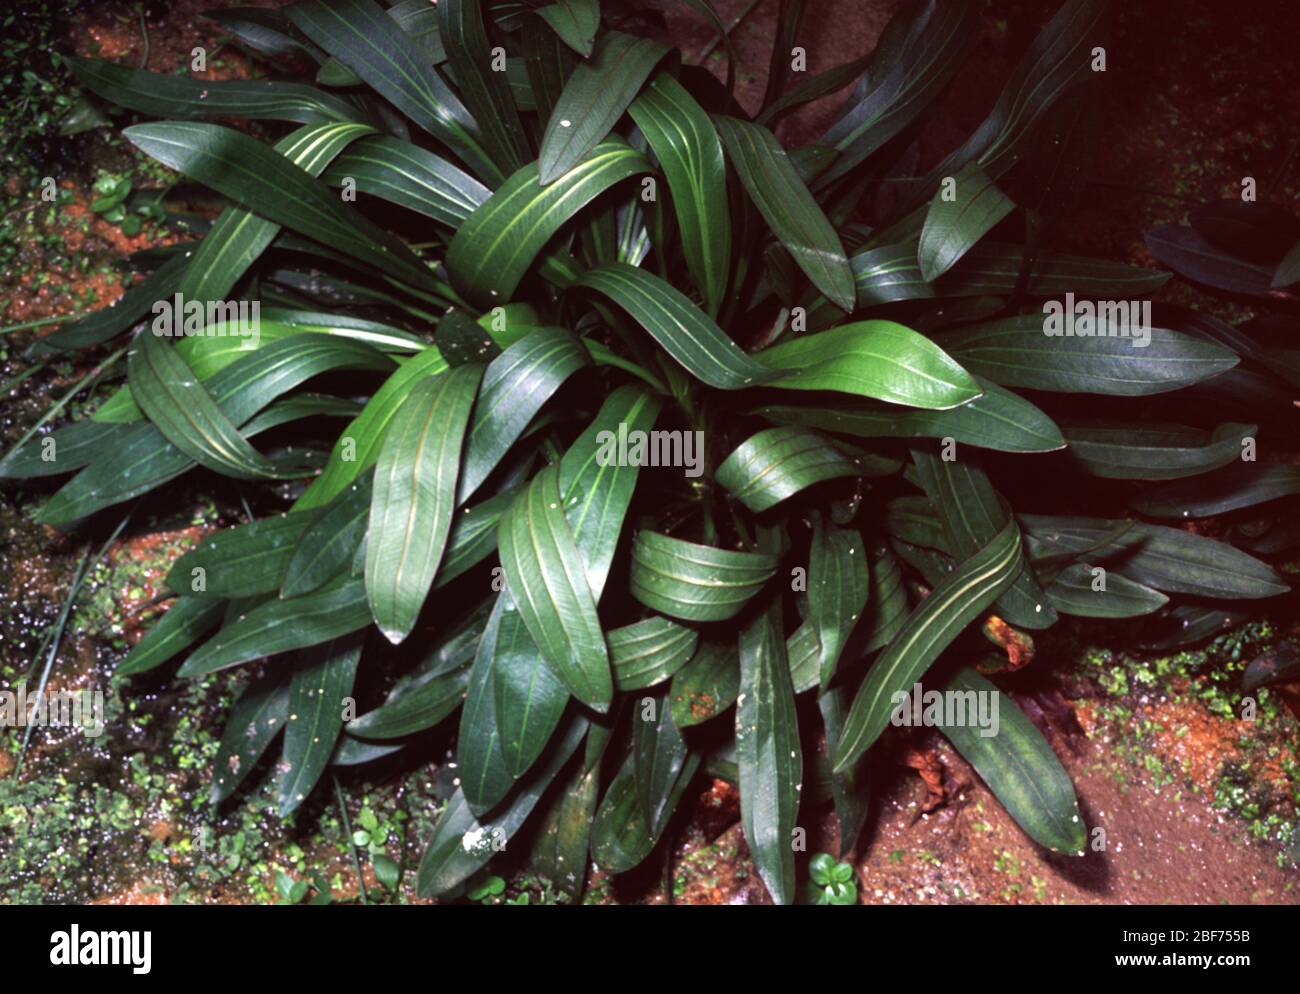 Ruffle Sword, Echinodorus martii Stock Photo